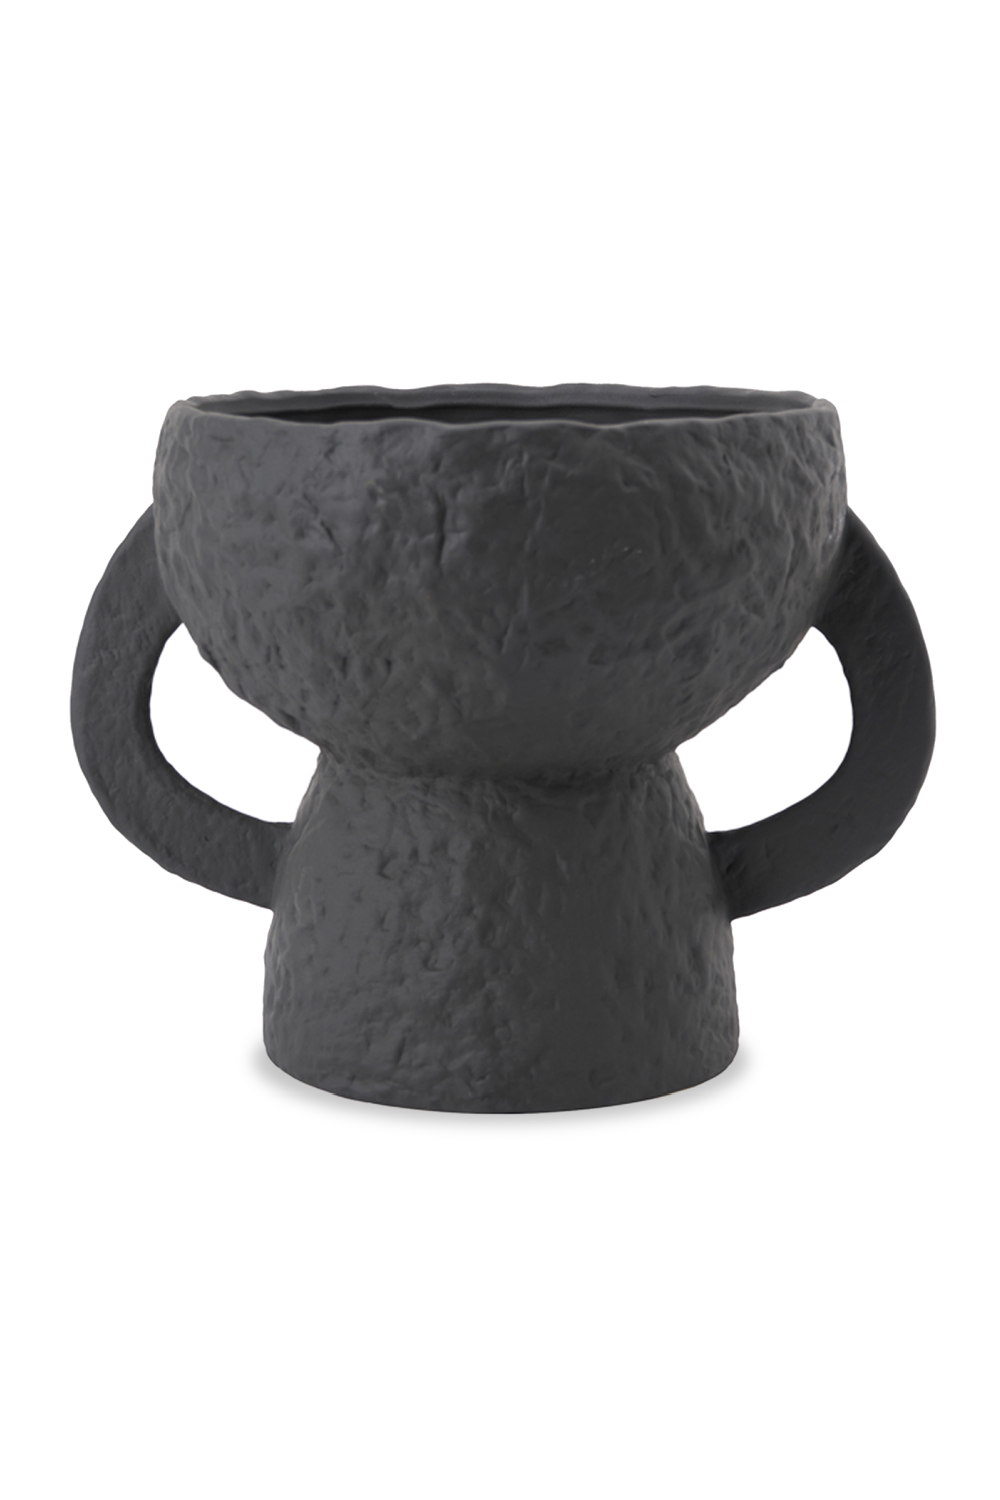 Textured Rustic Ceramic Vase | Liang & Eimil Mavros | Oroa.com